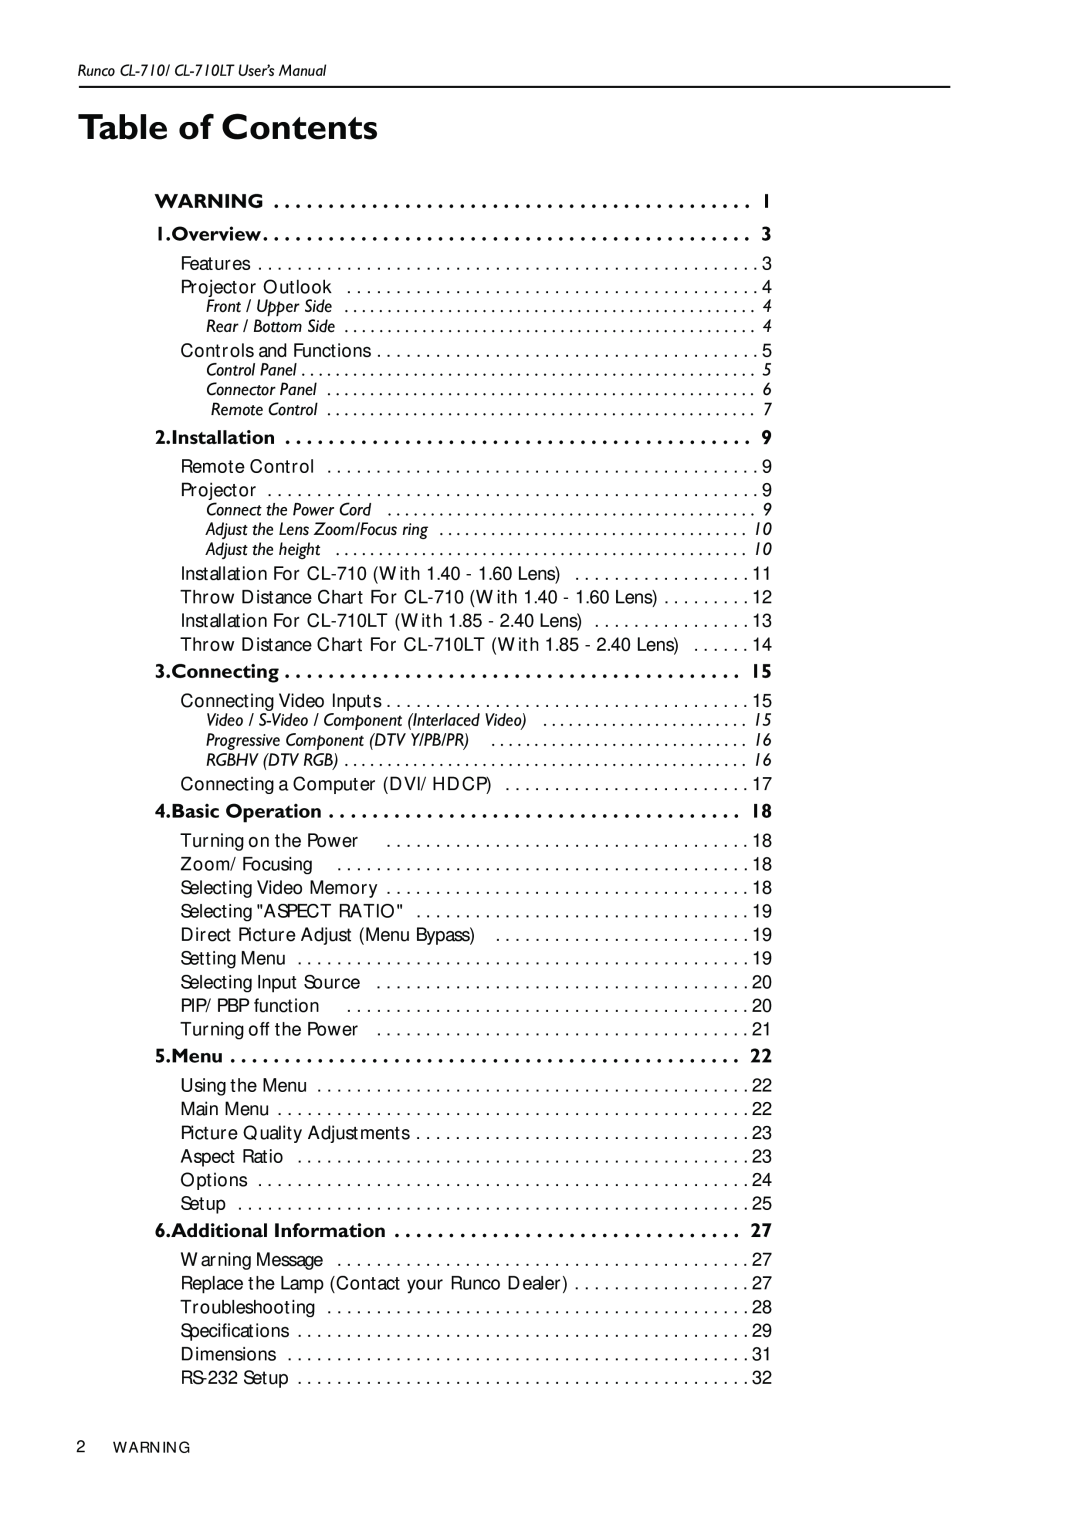 Runco CL-710LT manual Table of Contents 